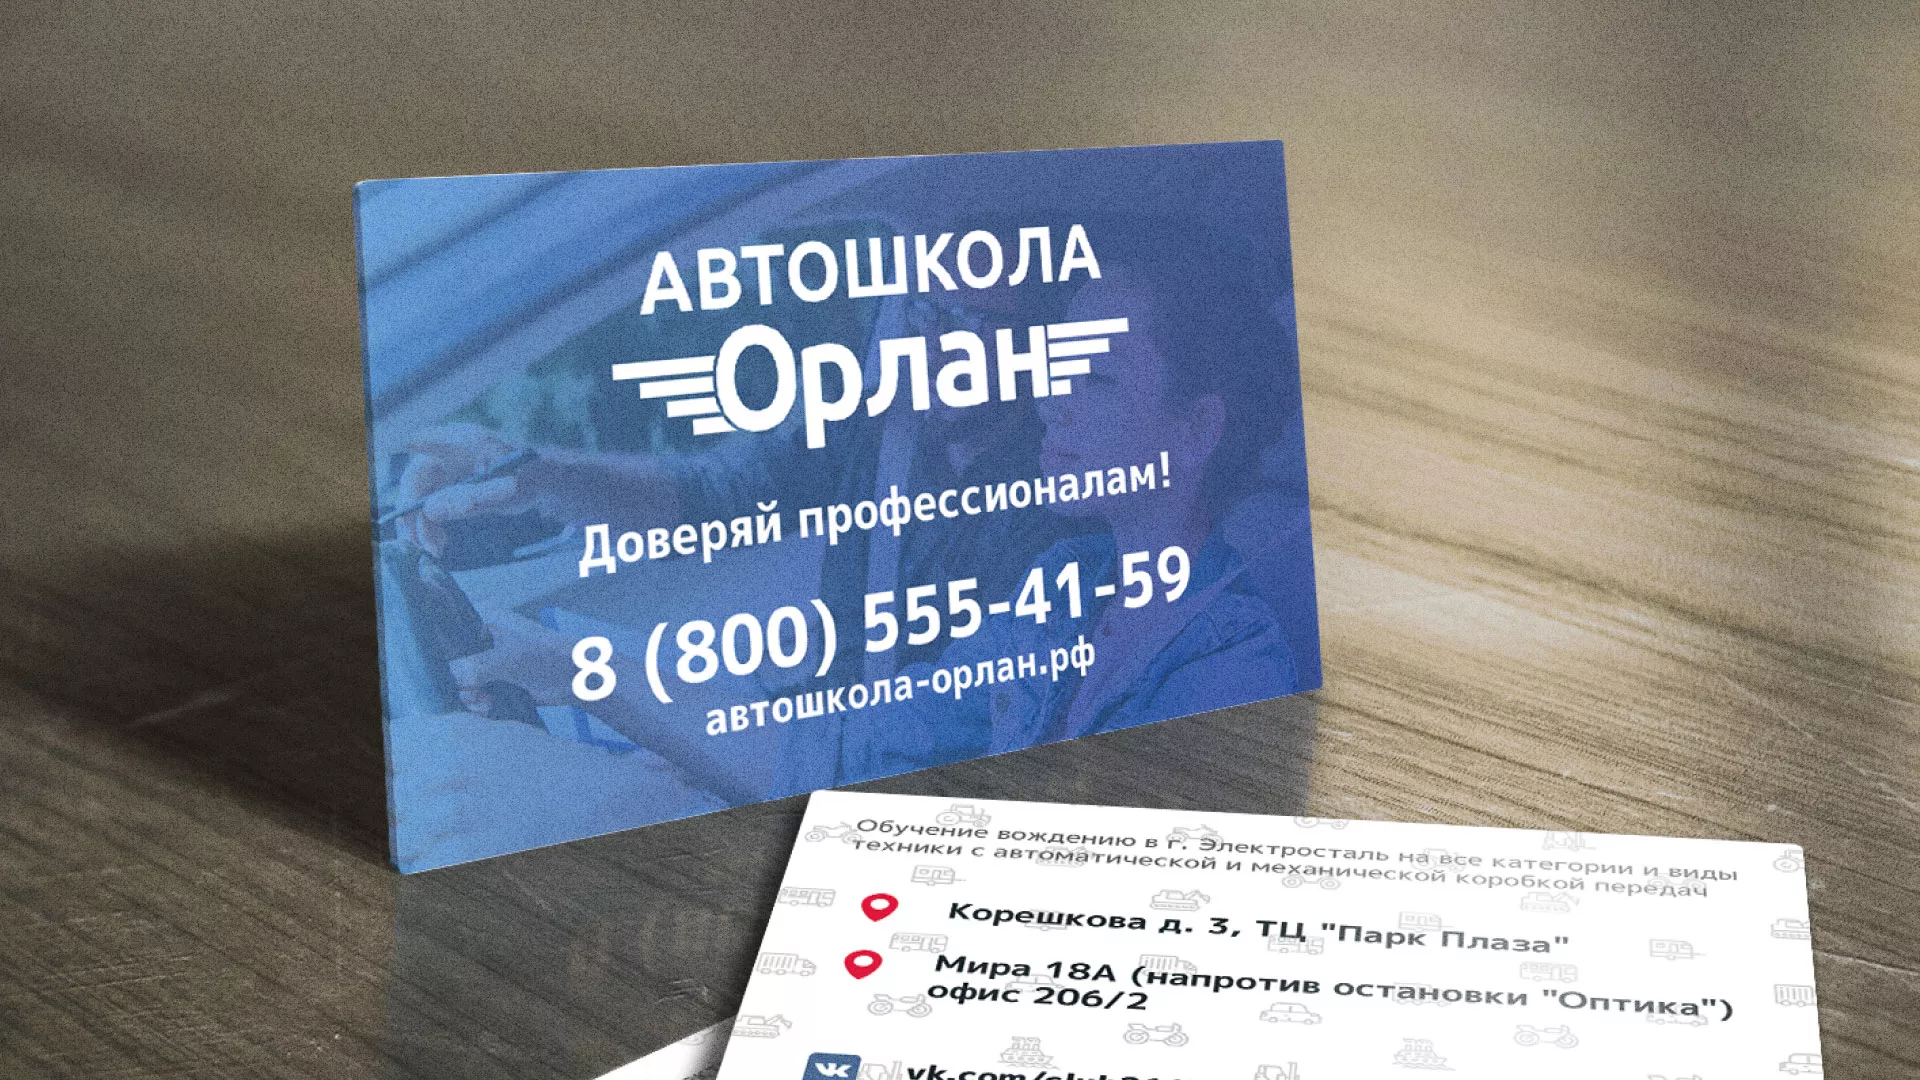 Дизайн рекламных визиток для автошколы «Орлан» в Ликино-Дулево